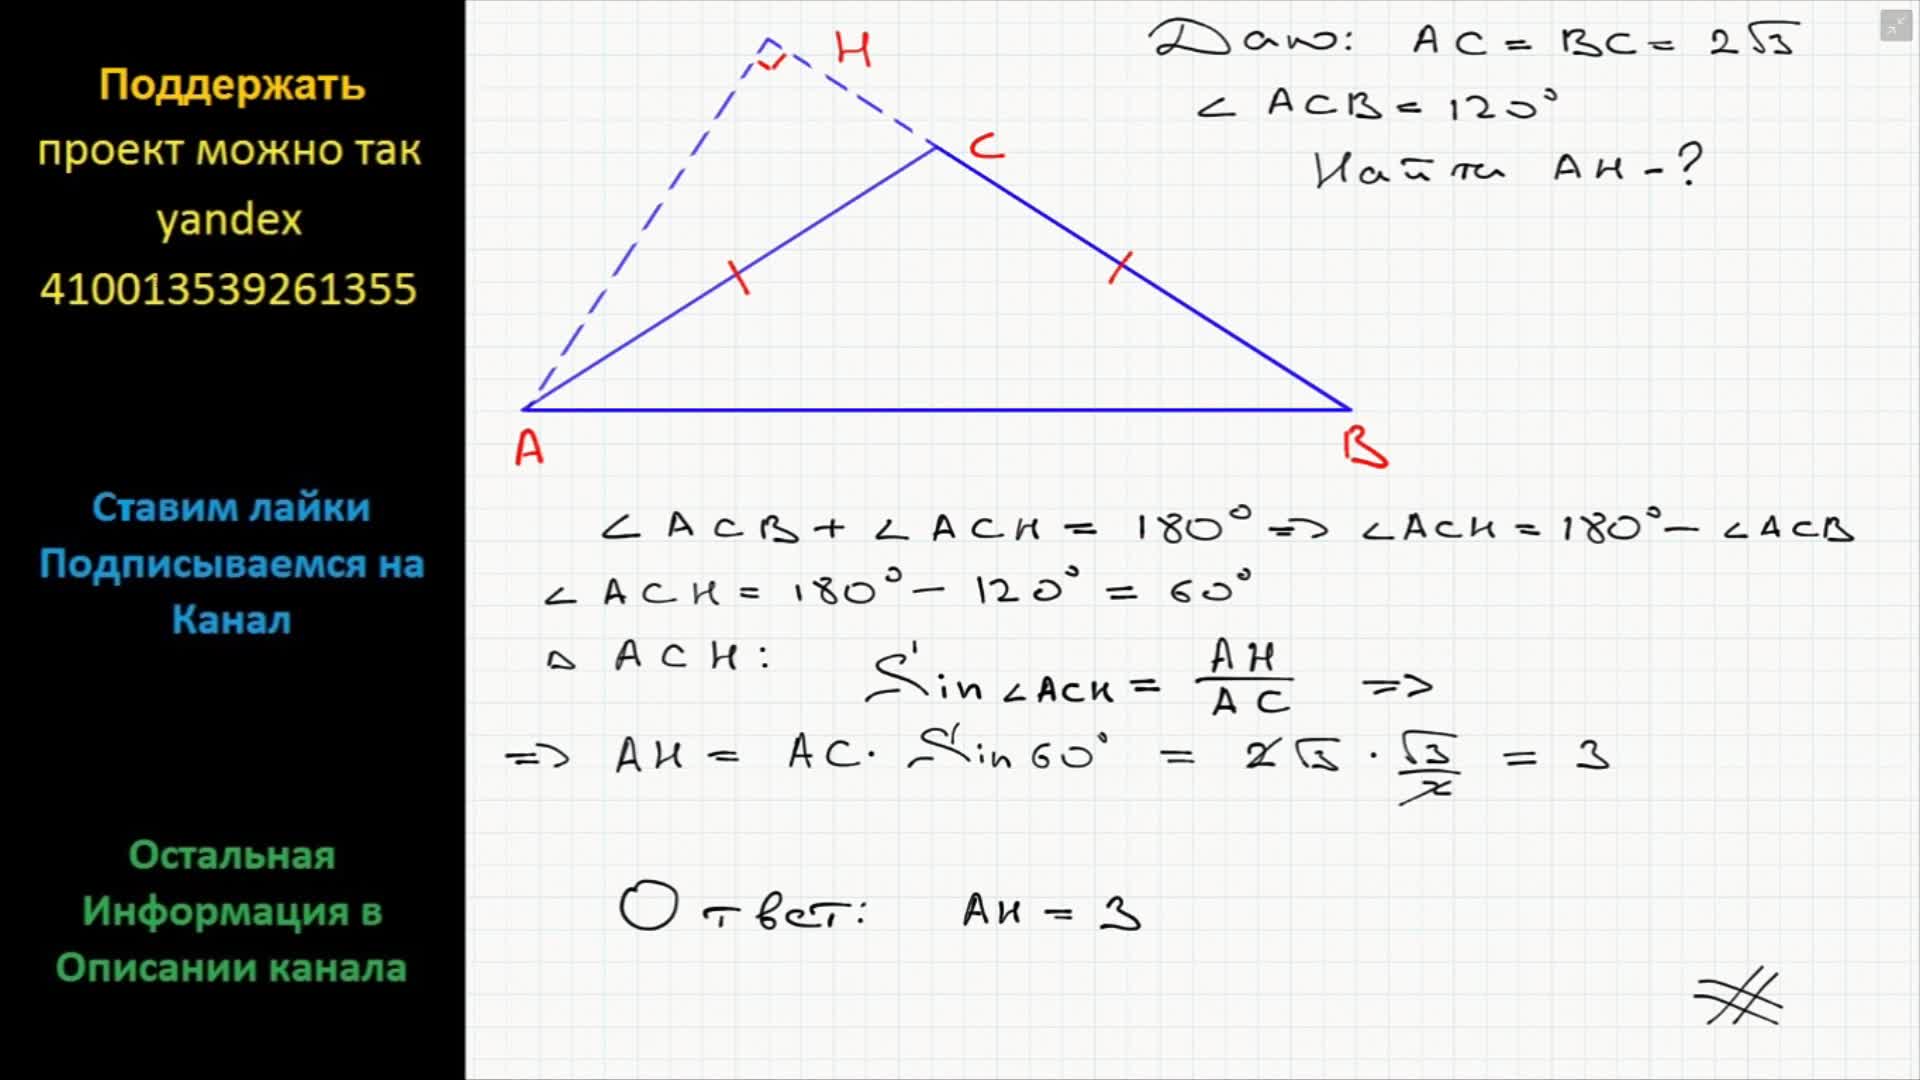 В треугольнике 112 106. Угол противолежащий основанию равнобедренного треугольника 120. Угол,противолежащий оснваниюравнобедренного треугольника Раве 120. Угол противолежащий основанию равнобедренного треугольника. Угол противолежащий основанию равнобедренного треугольника равен 120.